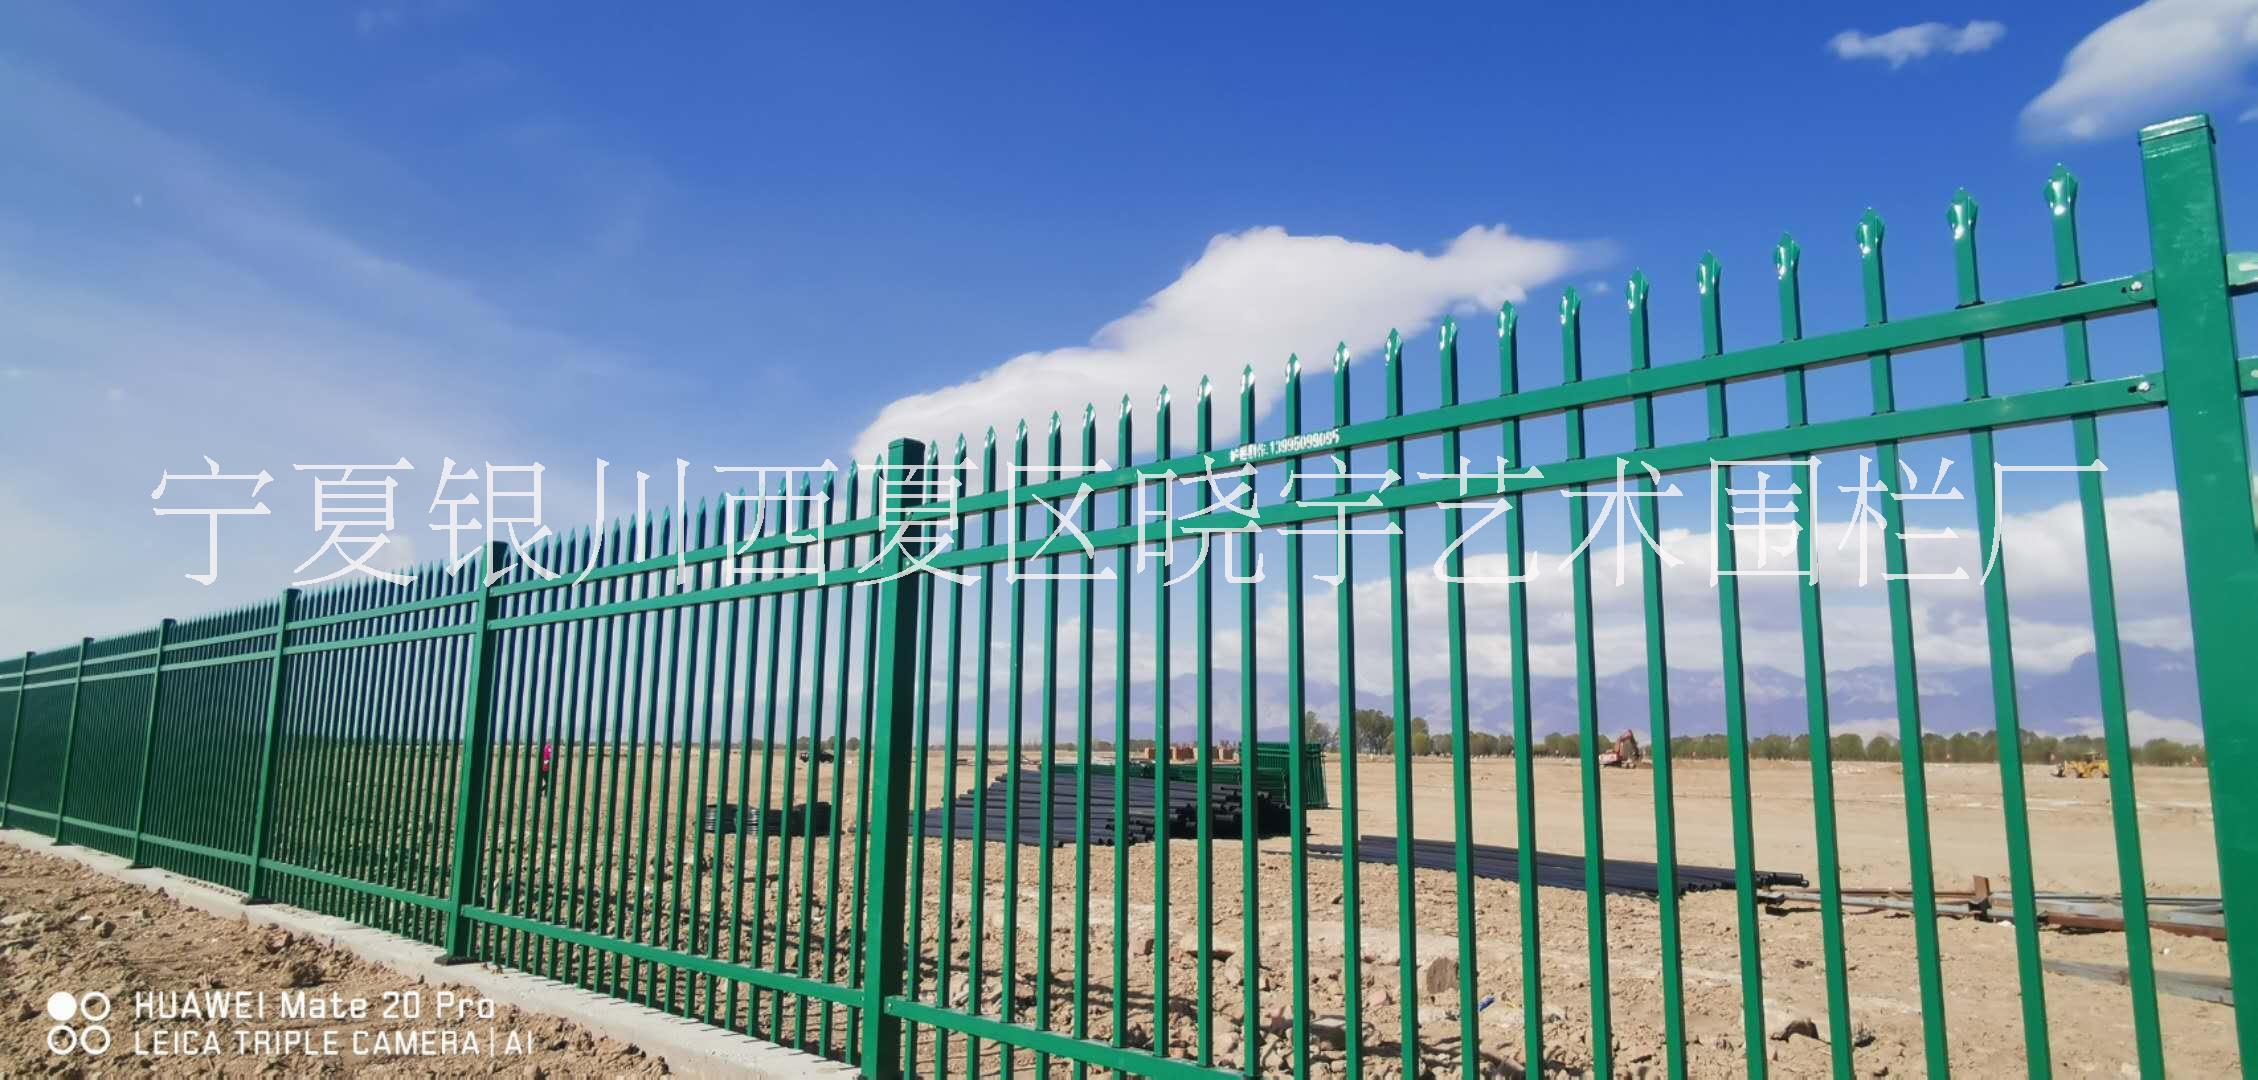 锌钢护栏厂家    xy-55喷涂烤漆护栏   护栏批发图片